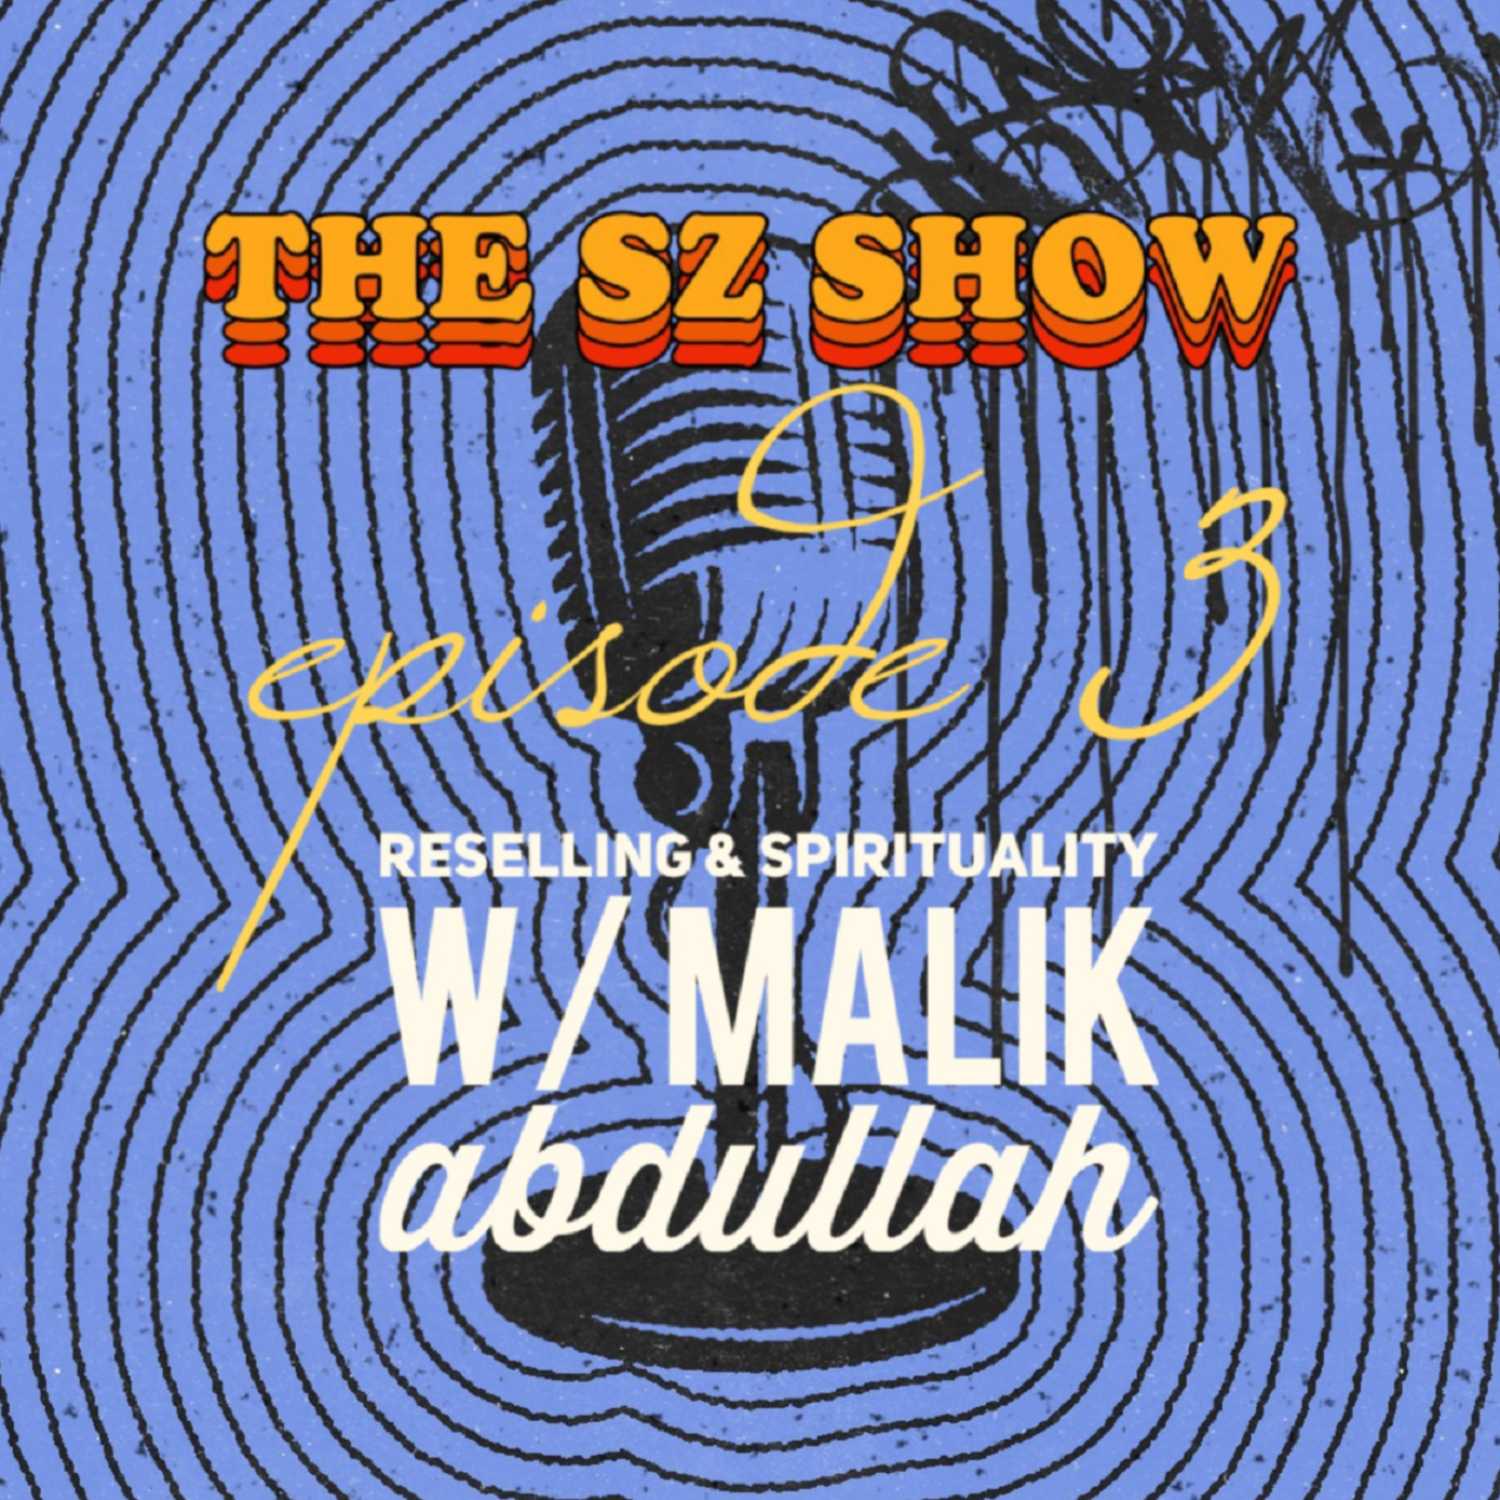 Episode 3: Reselling & Spirituality w/ Malik Abdullah